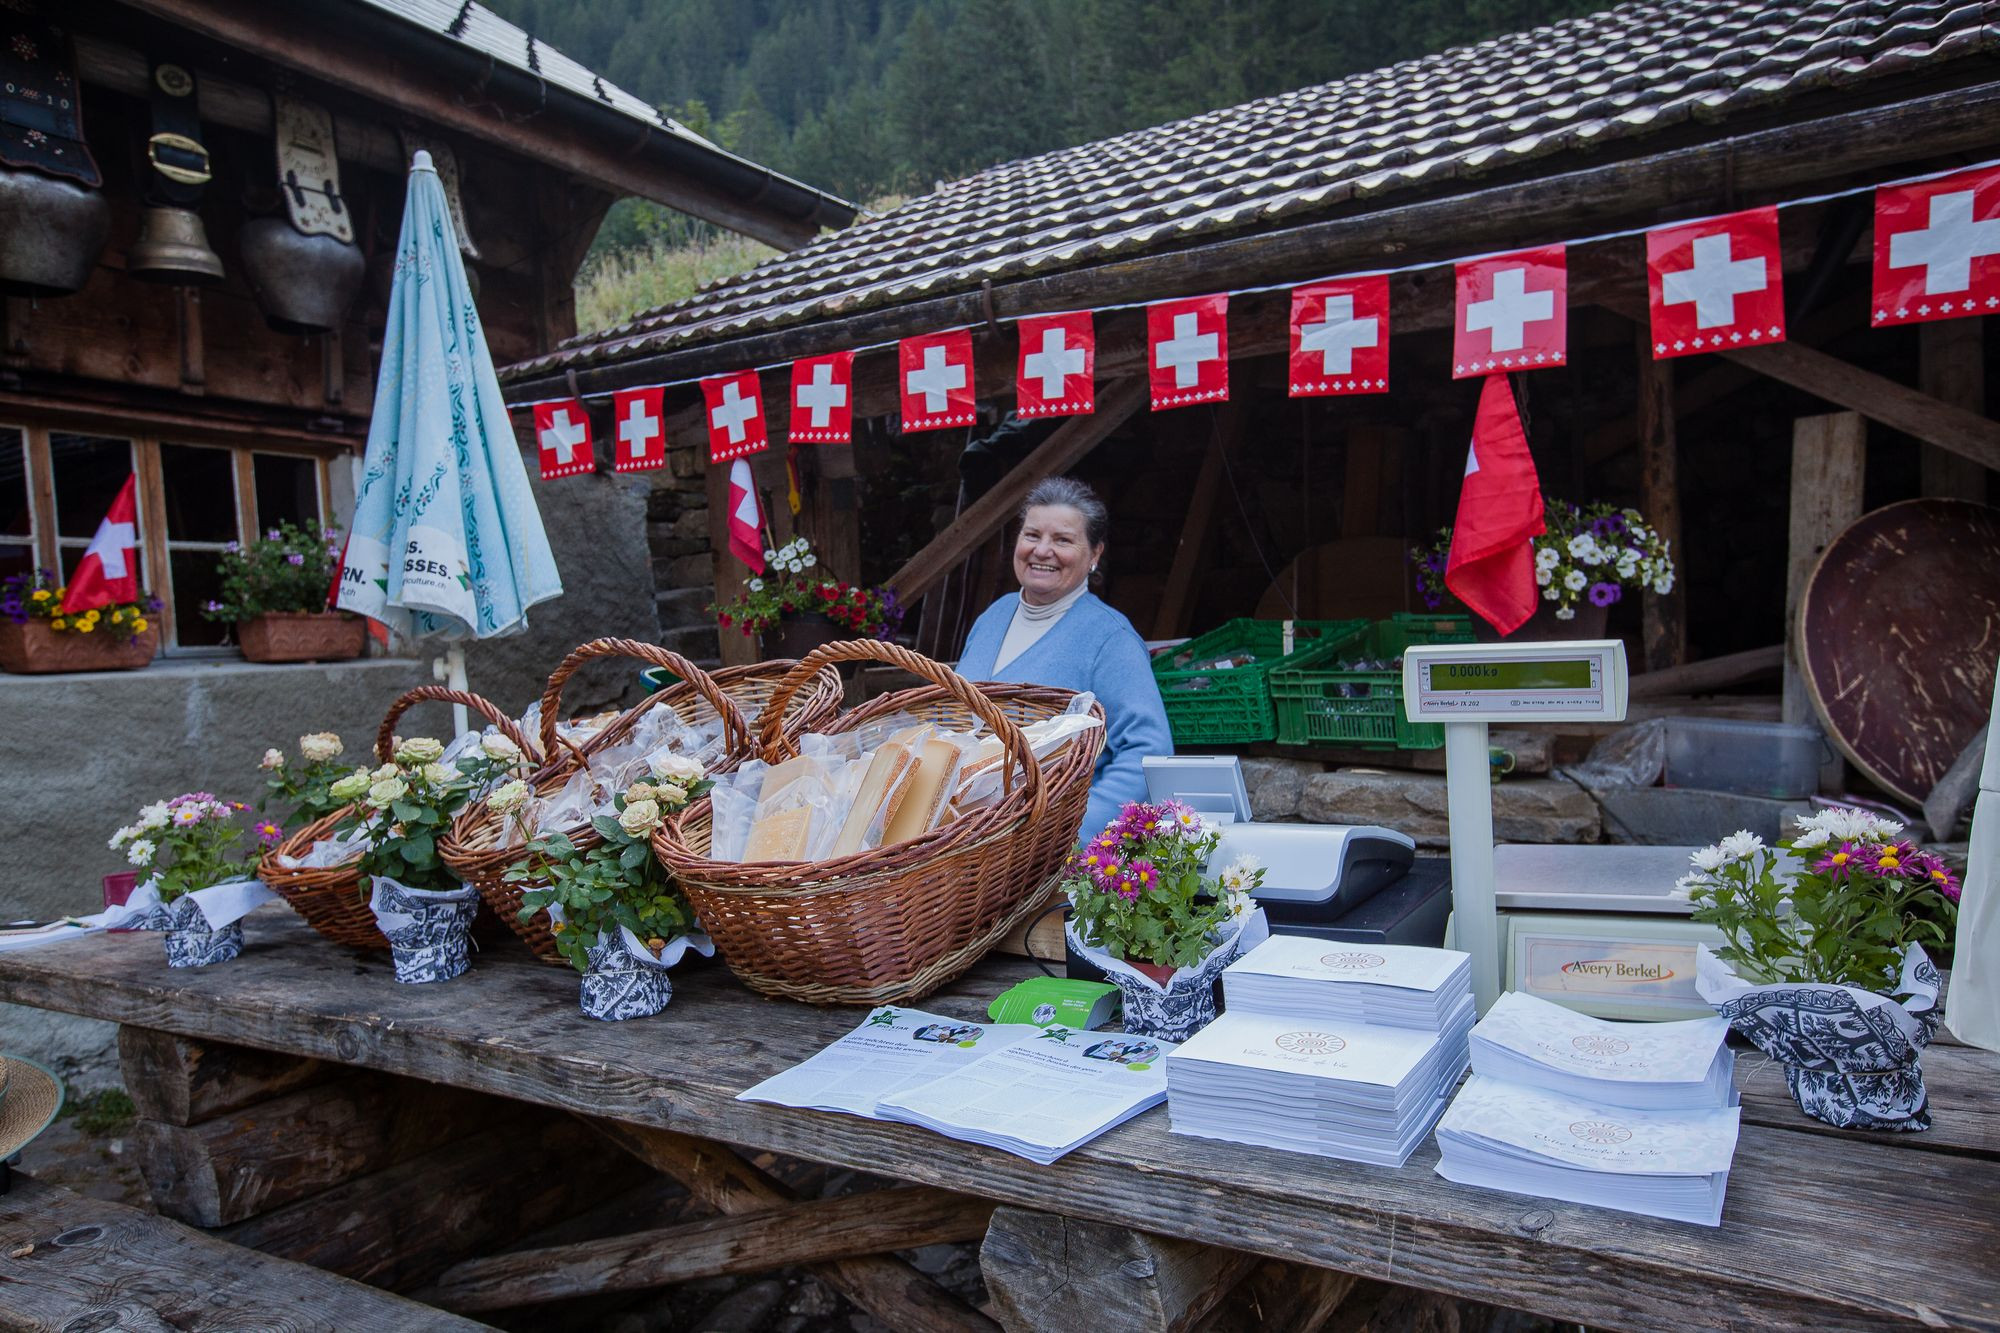 Silvia accueille les visiteurs qui souhaitent acheter des produits de la ferme - brunch 2019